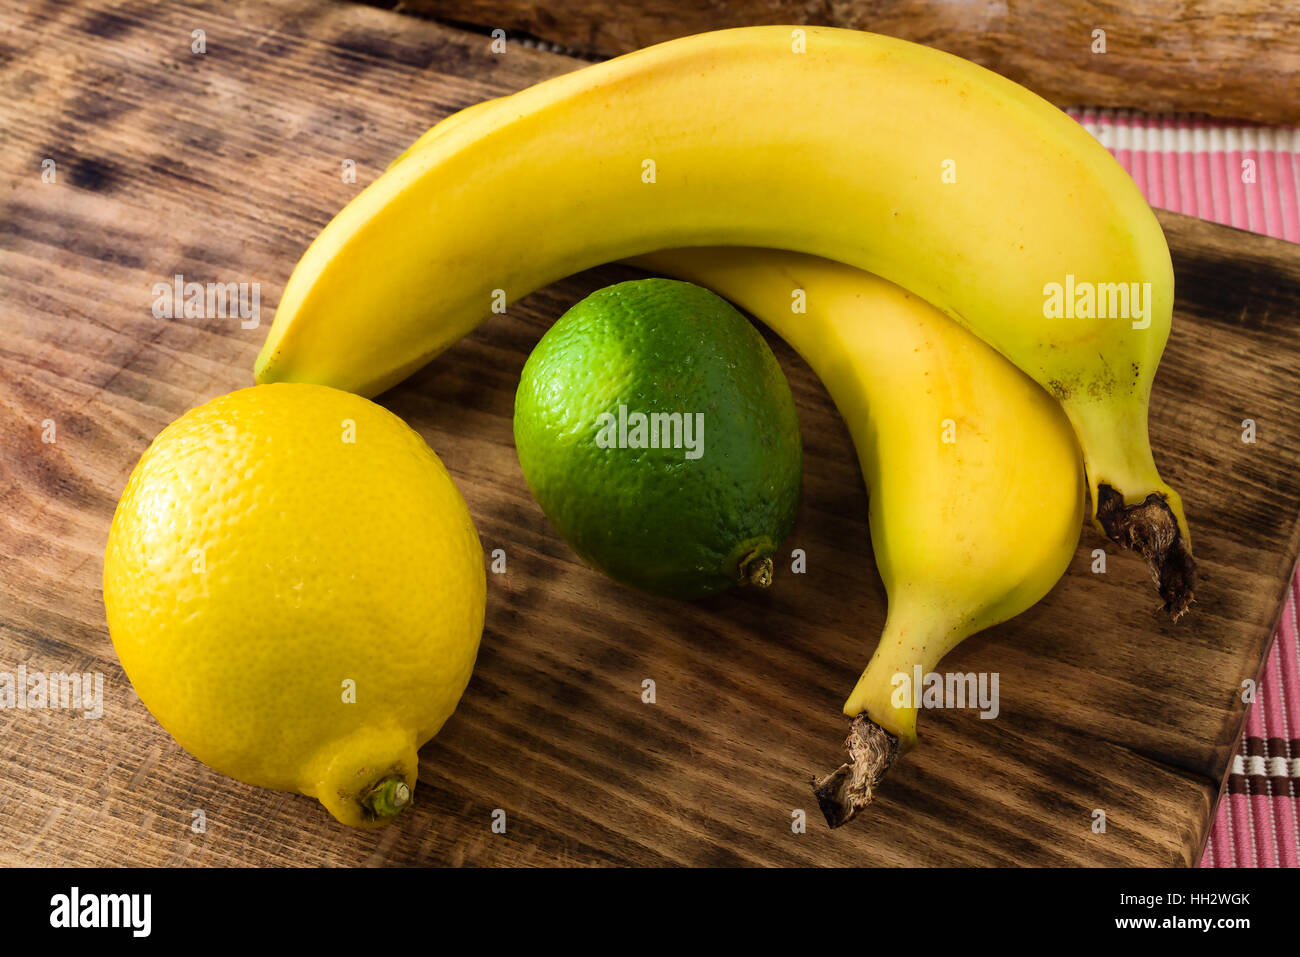 Fresche e mature, agrumi, limone e calce, insieme con le banane sul bordo di taglio. Foto Stock